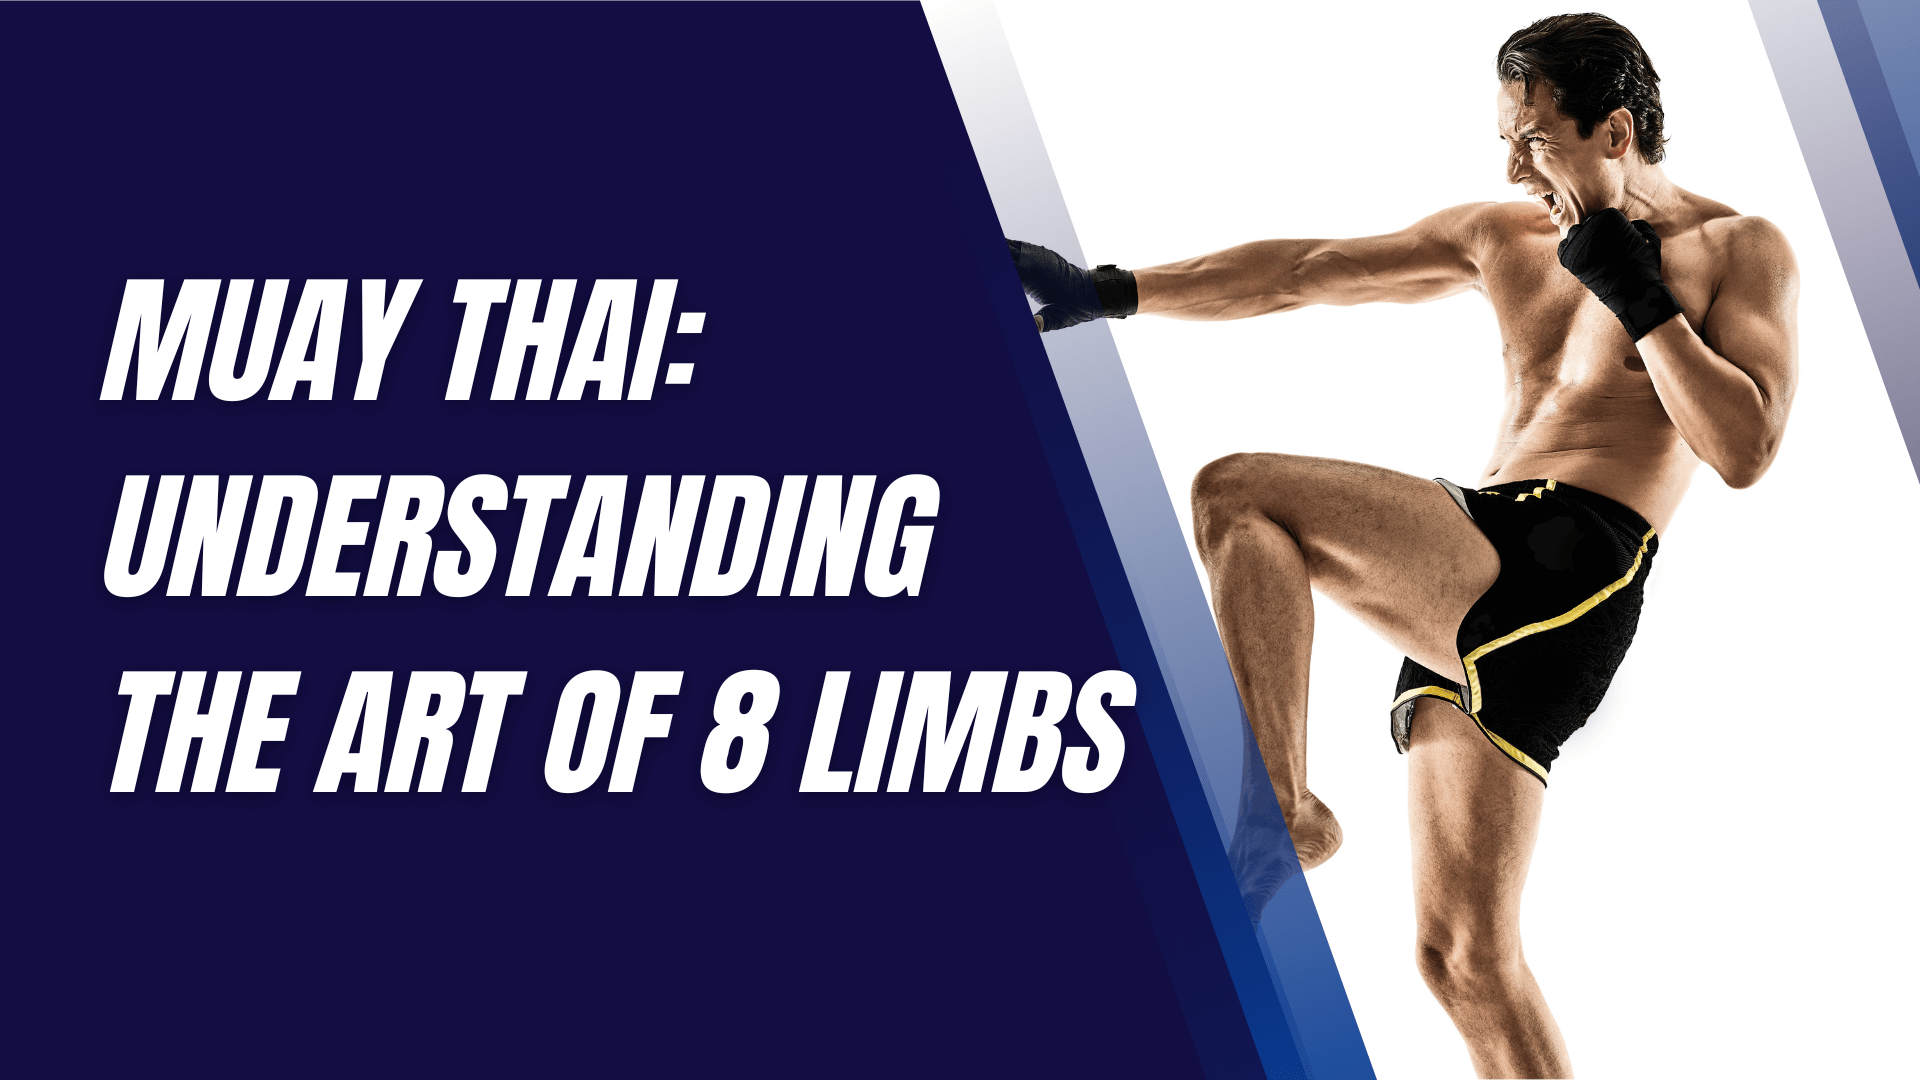 Muay Thai: Understanding the Art of 8 Limbs